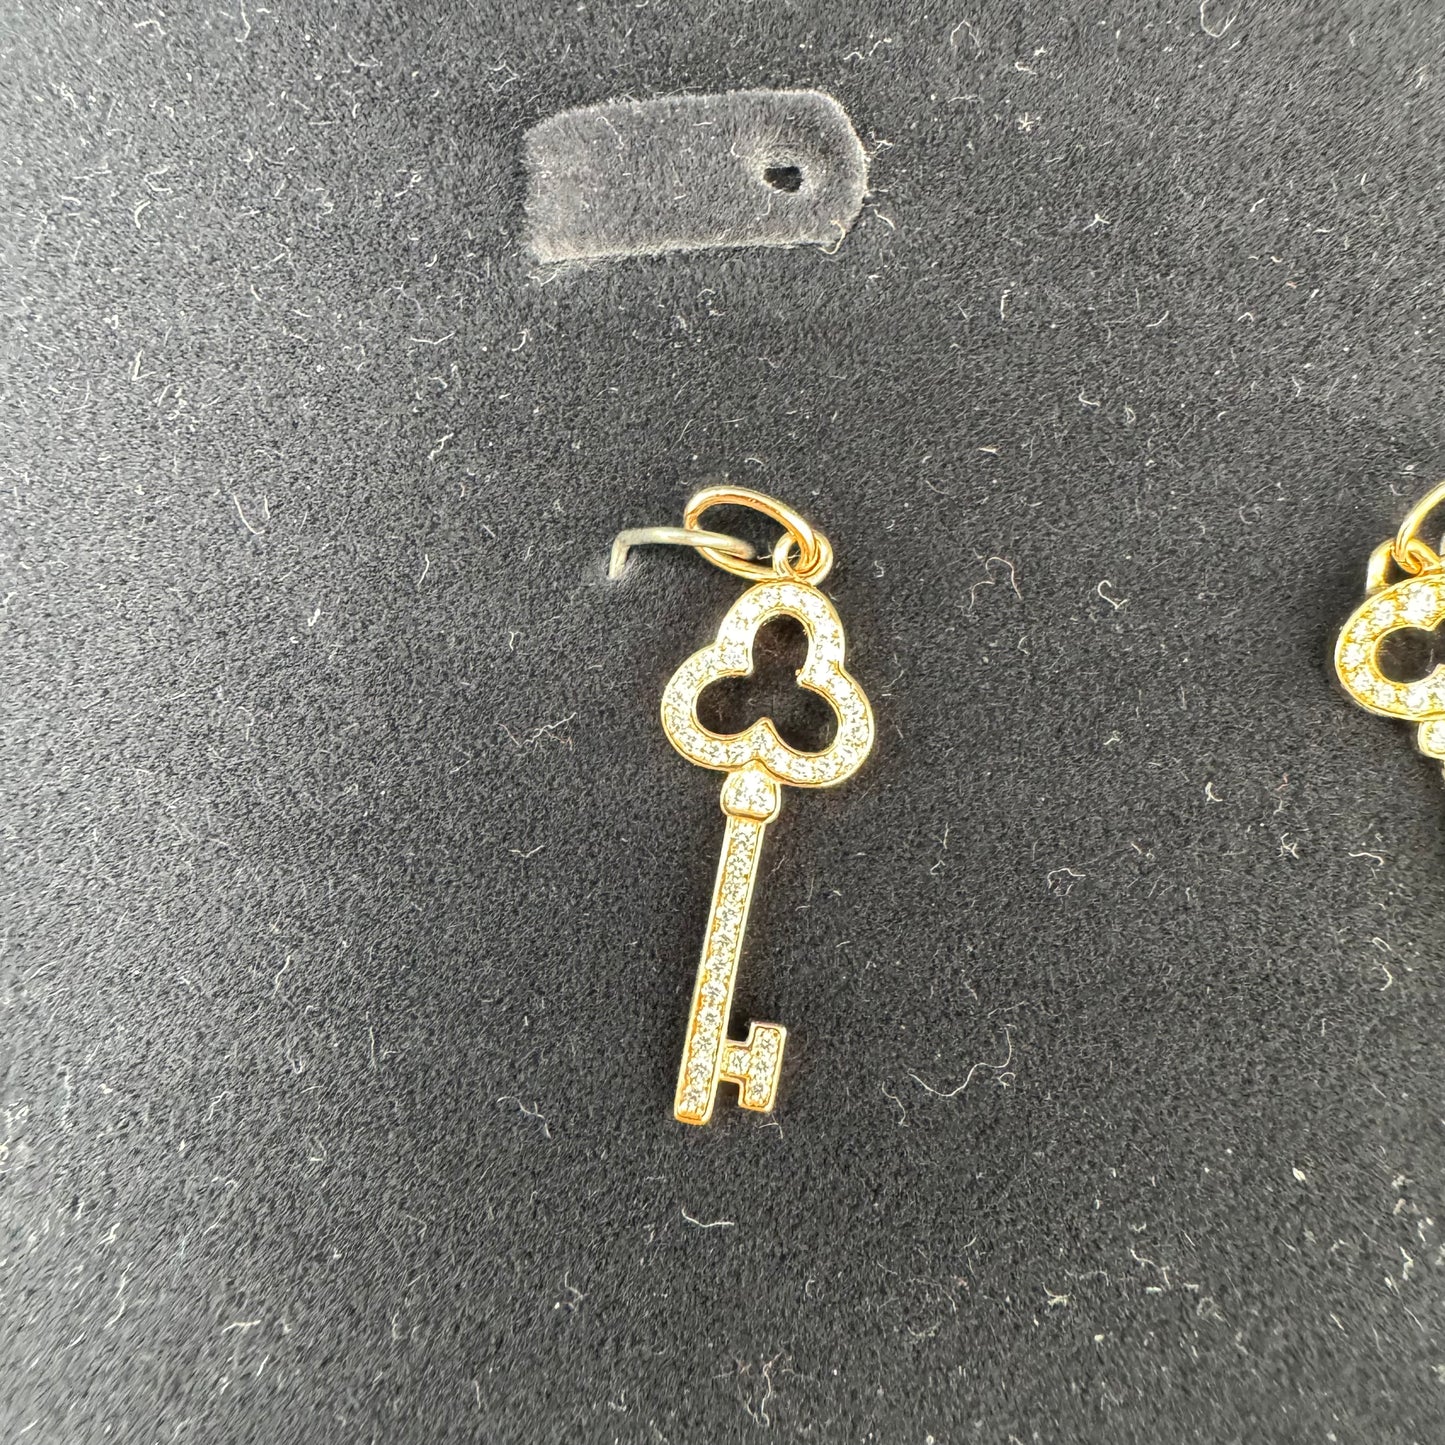 TIFFANY & CO. 18K Yellow Gold Diamond Mini Open Trefoil Key Pendant (3 sets)